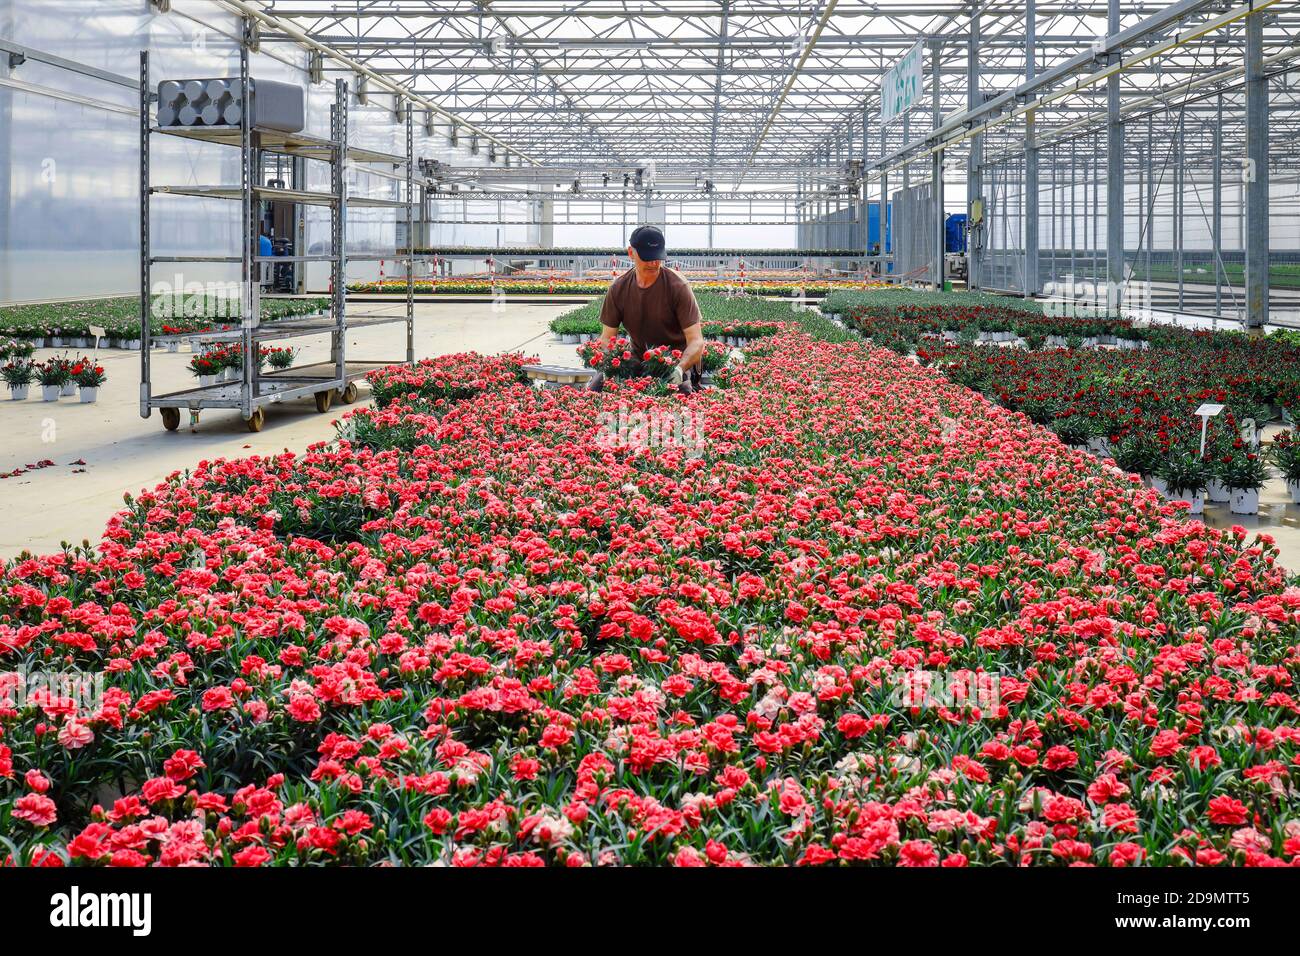 Gärtner im Gartenbau bereitet Topfpflanzen im Gewächshaus zum Verkauf vor,  Baumschule, Kempen, Niederrhein, Nordrhein-Westfalen, Deutschland  Stockfotografie - Alamy